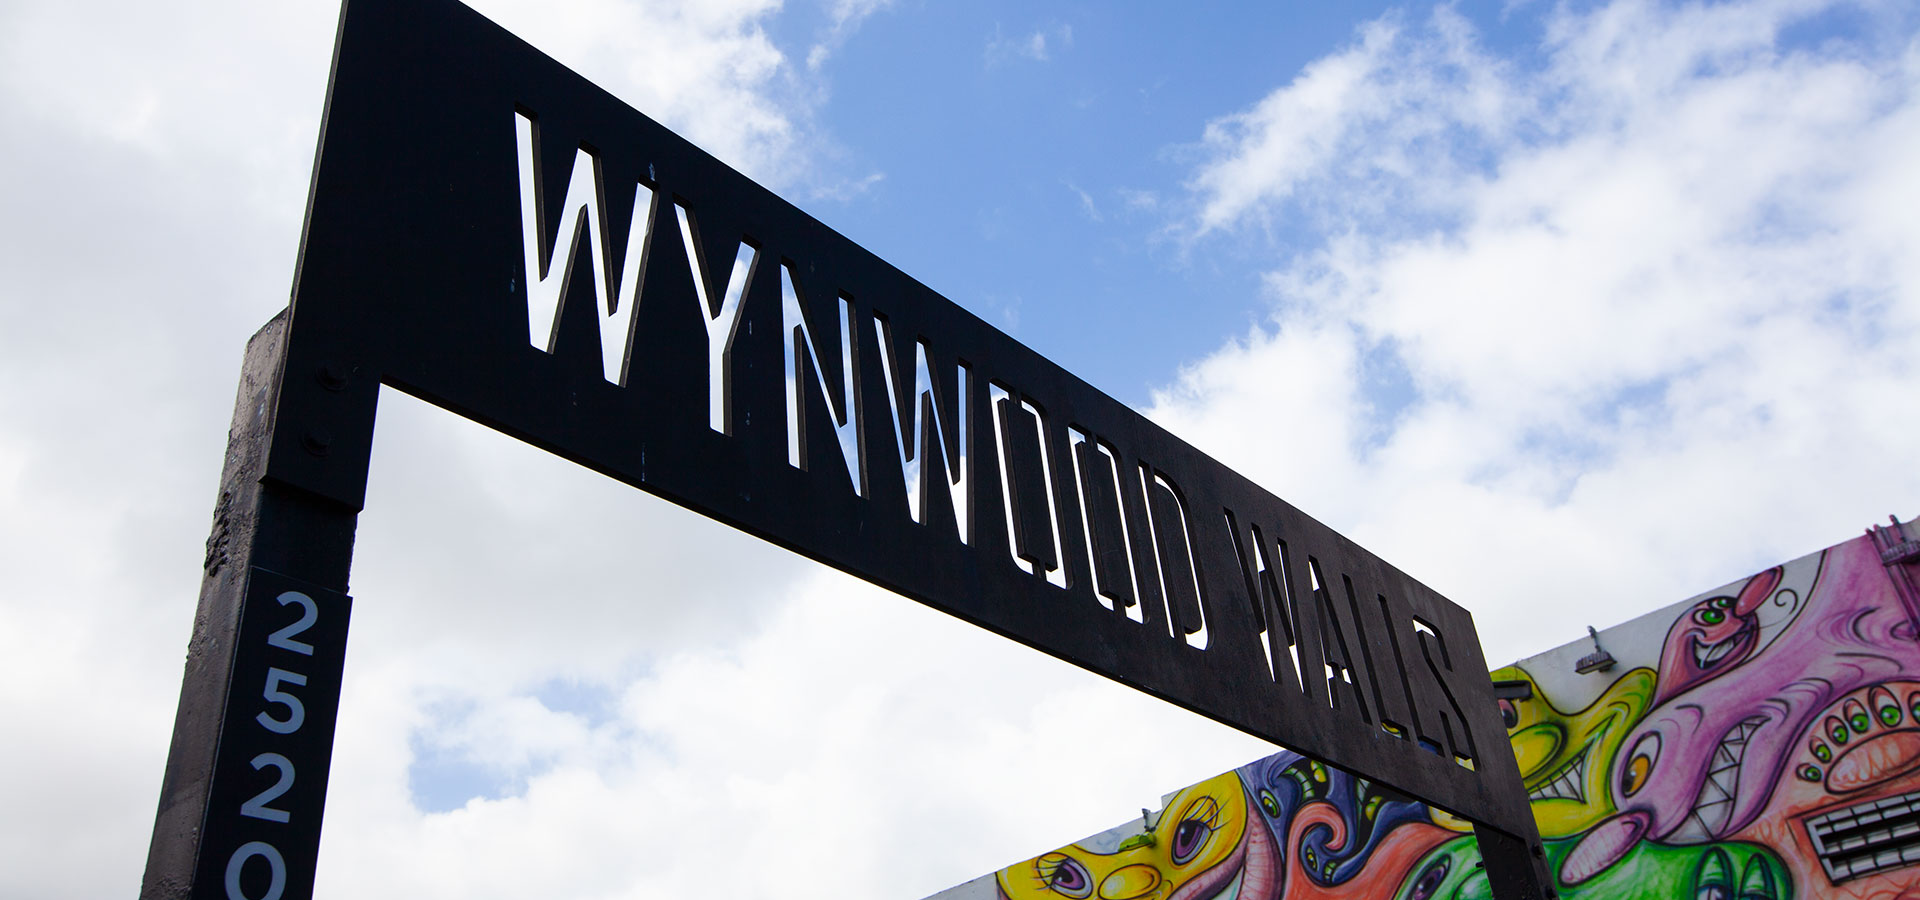 Wynwood Walls entrance sign